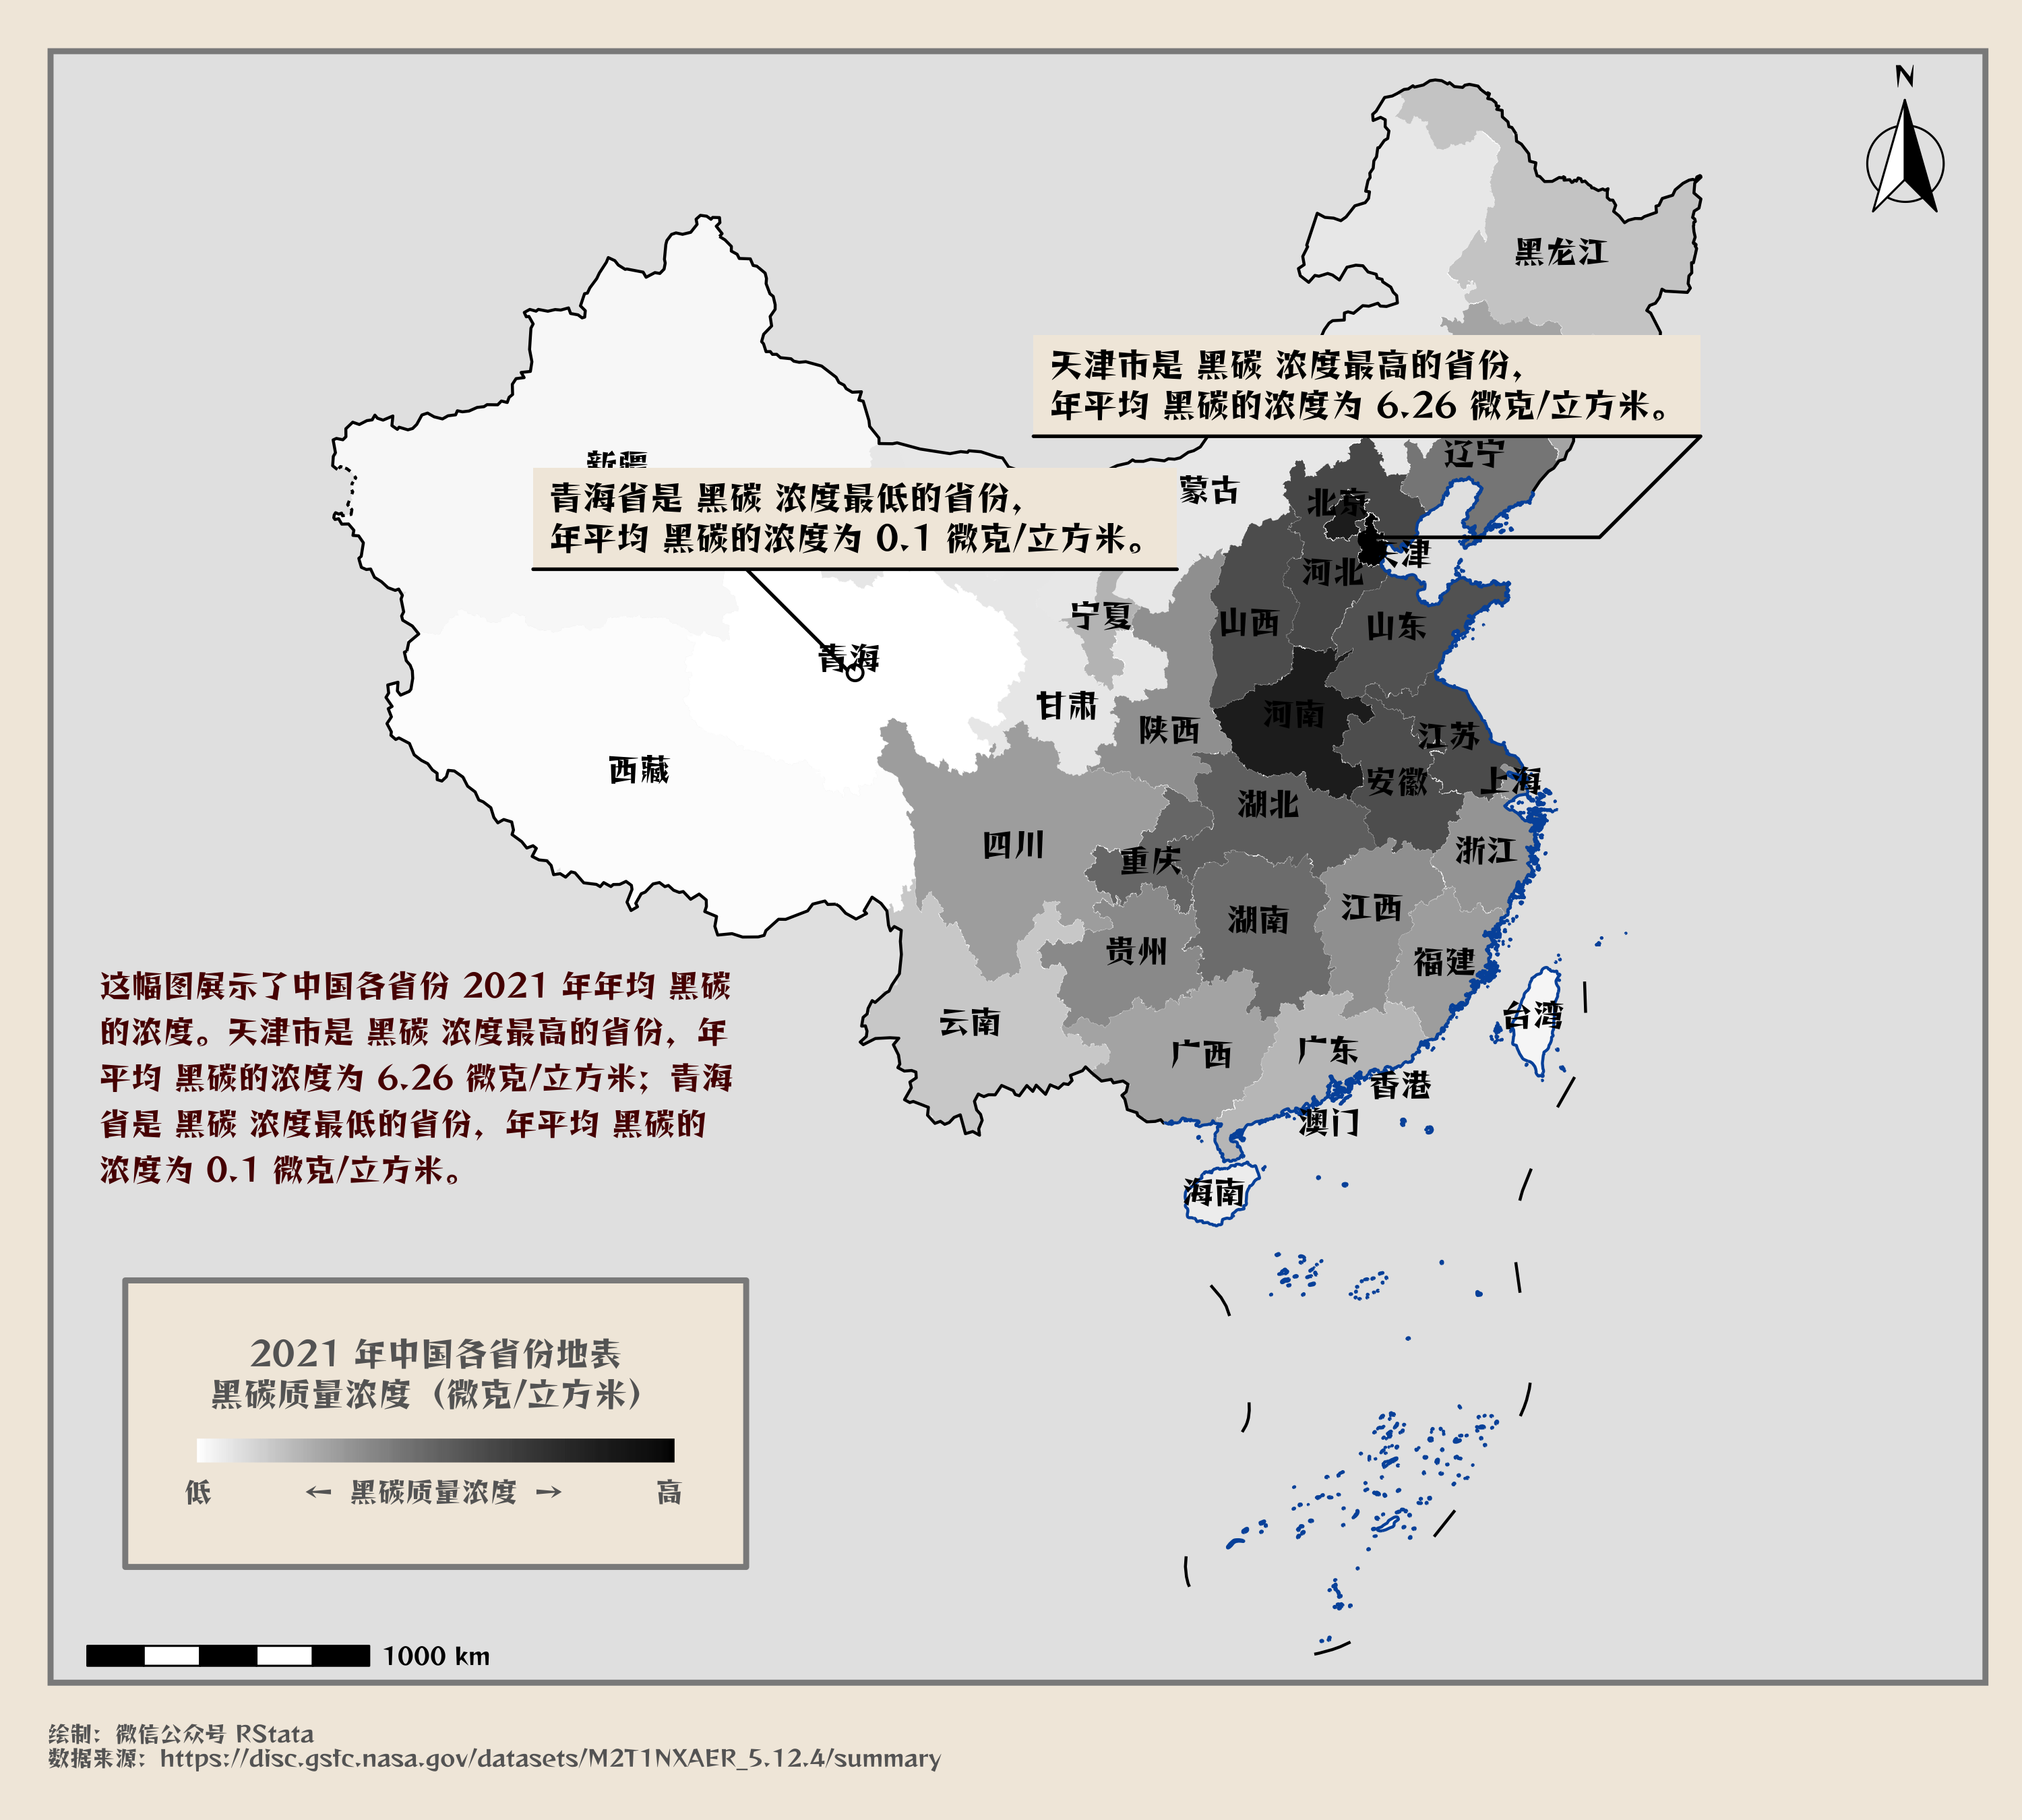 2021 年中国各省的年均黑碳浓度分布